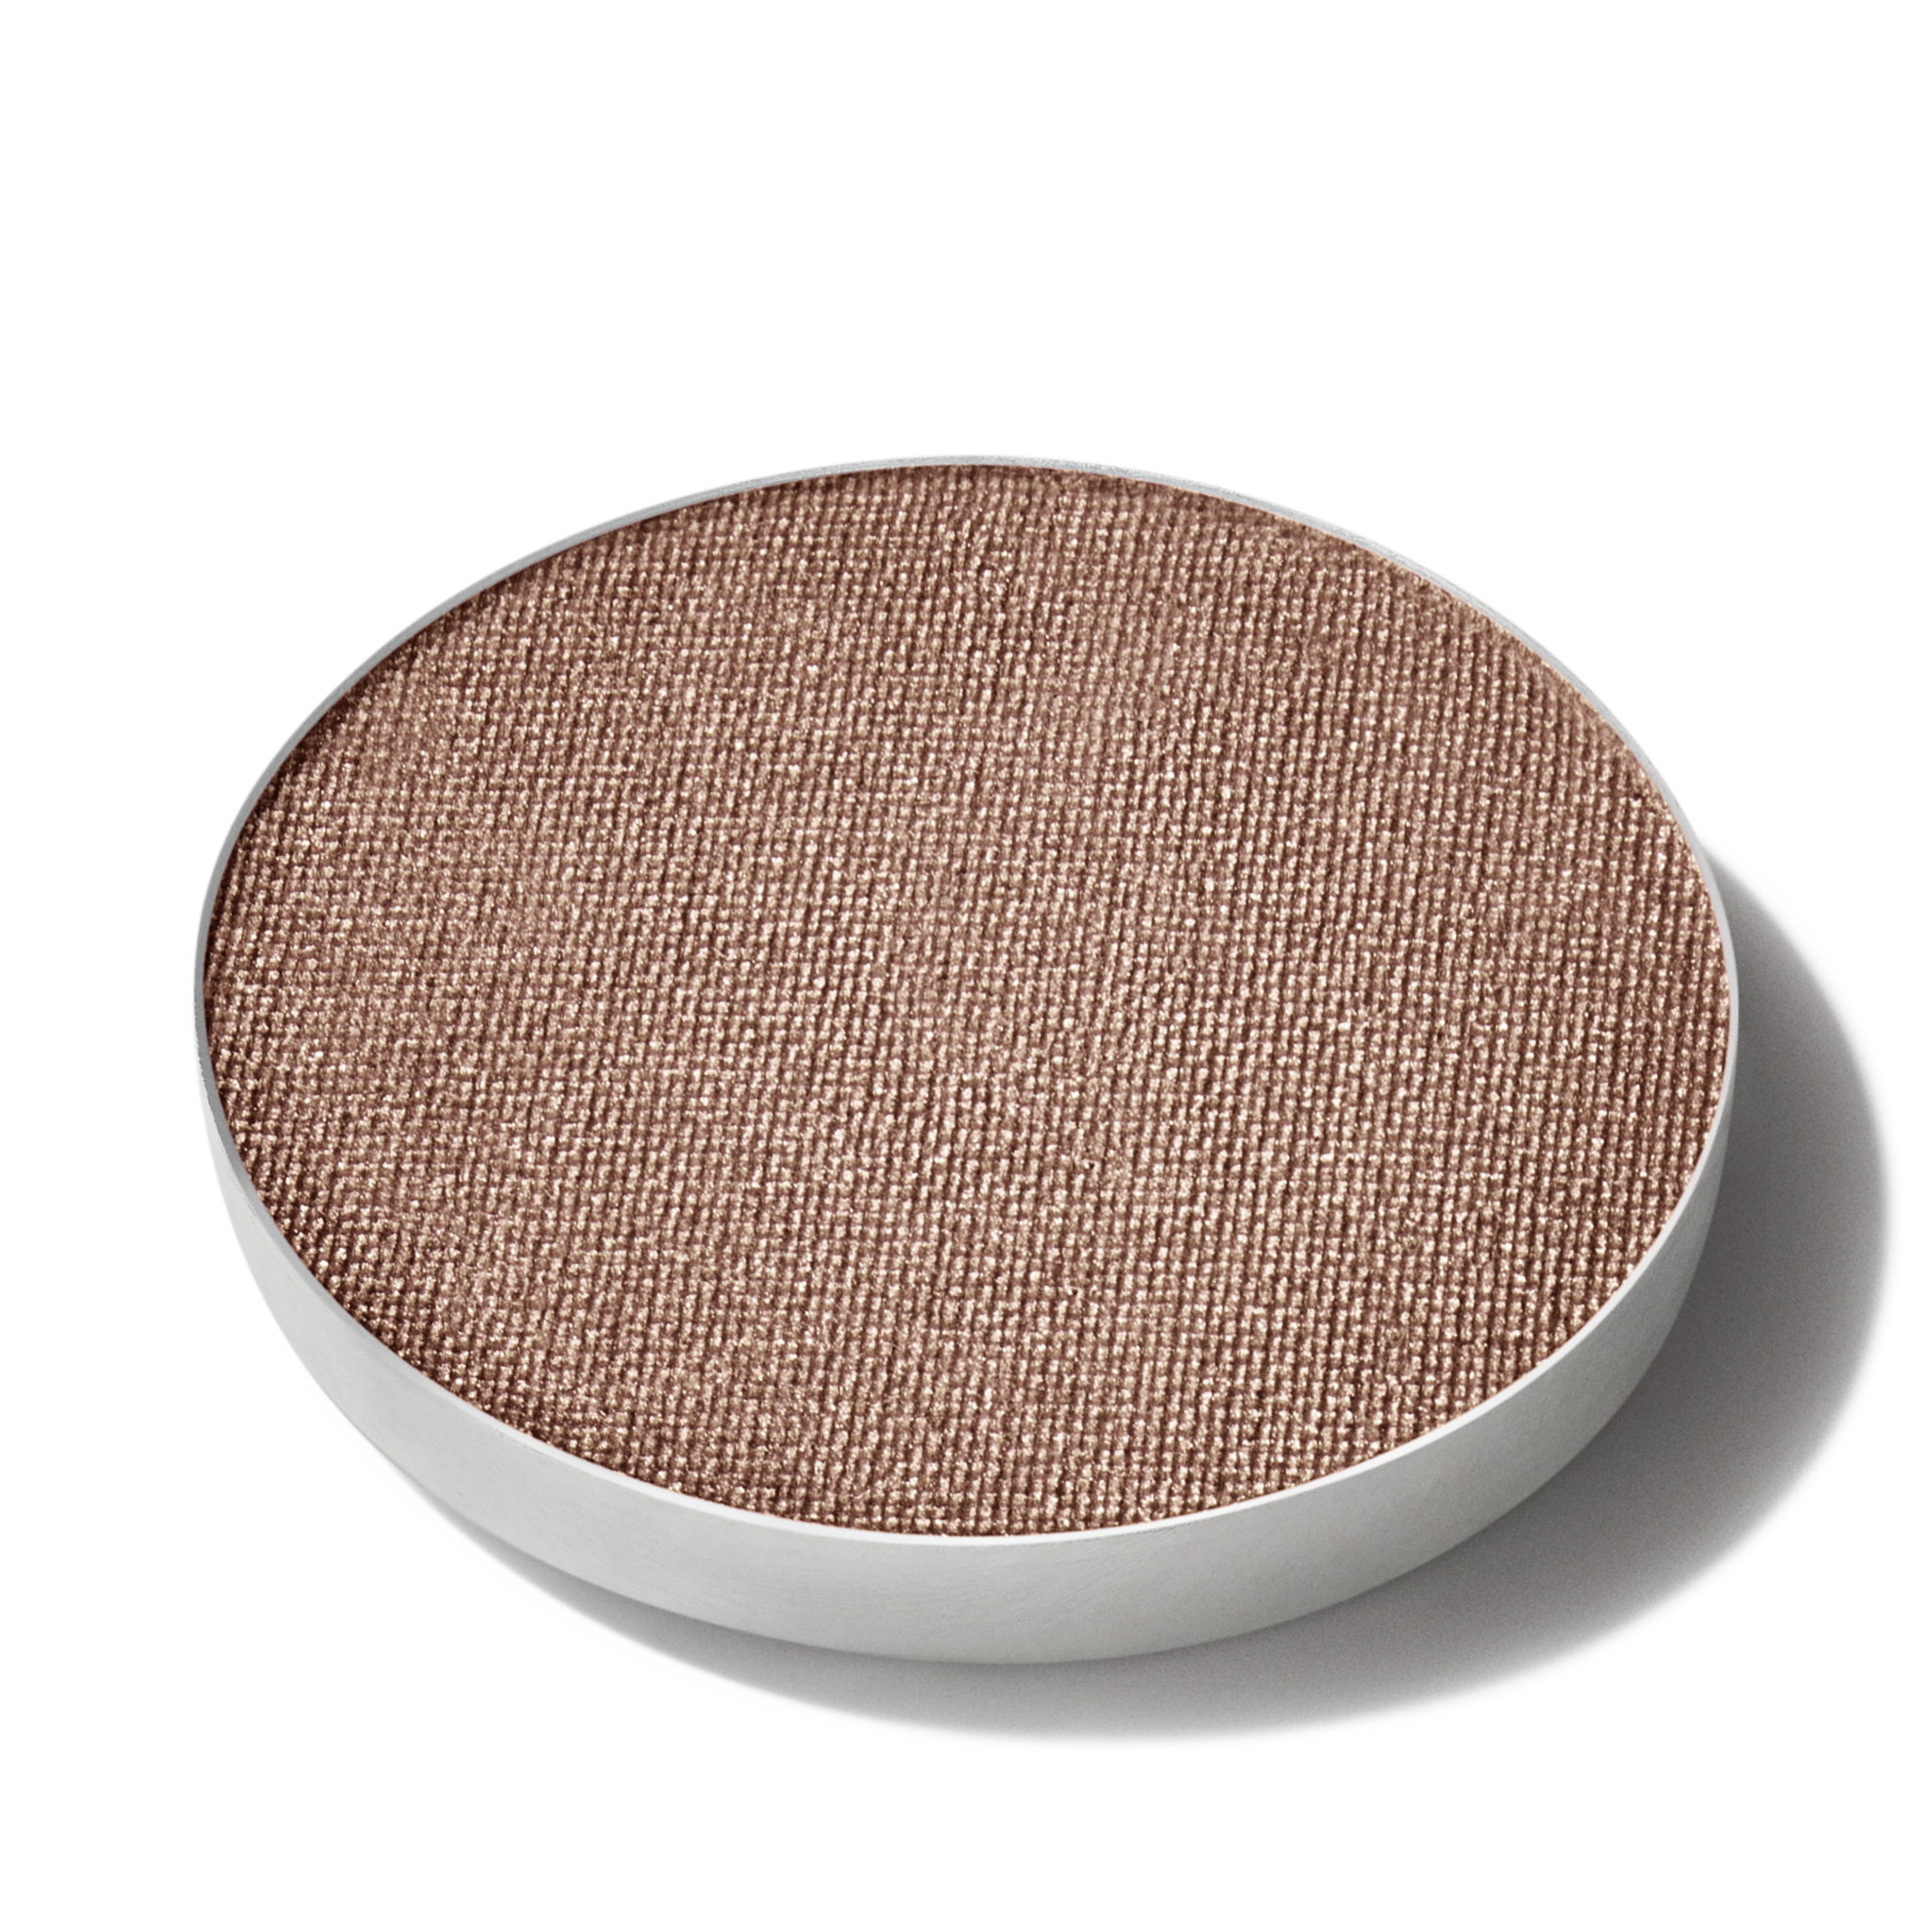 Oferta de Eye Shadow / Pro Palette Refill Pan por $263.2 en MAC Cosmetics